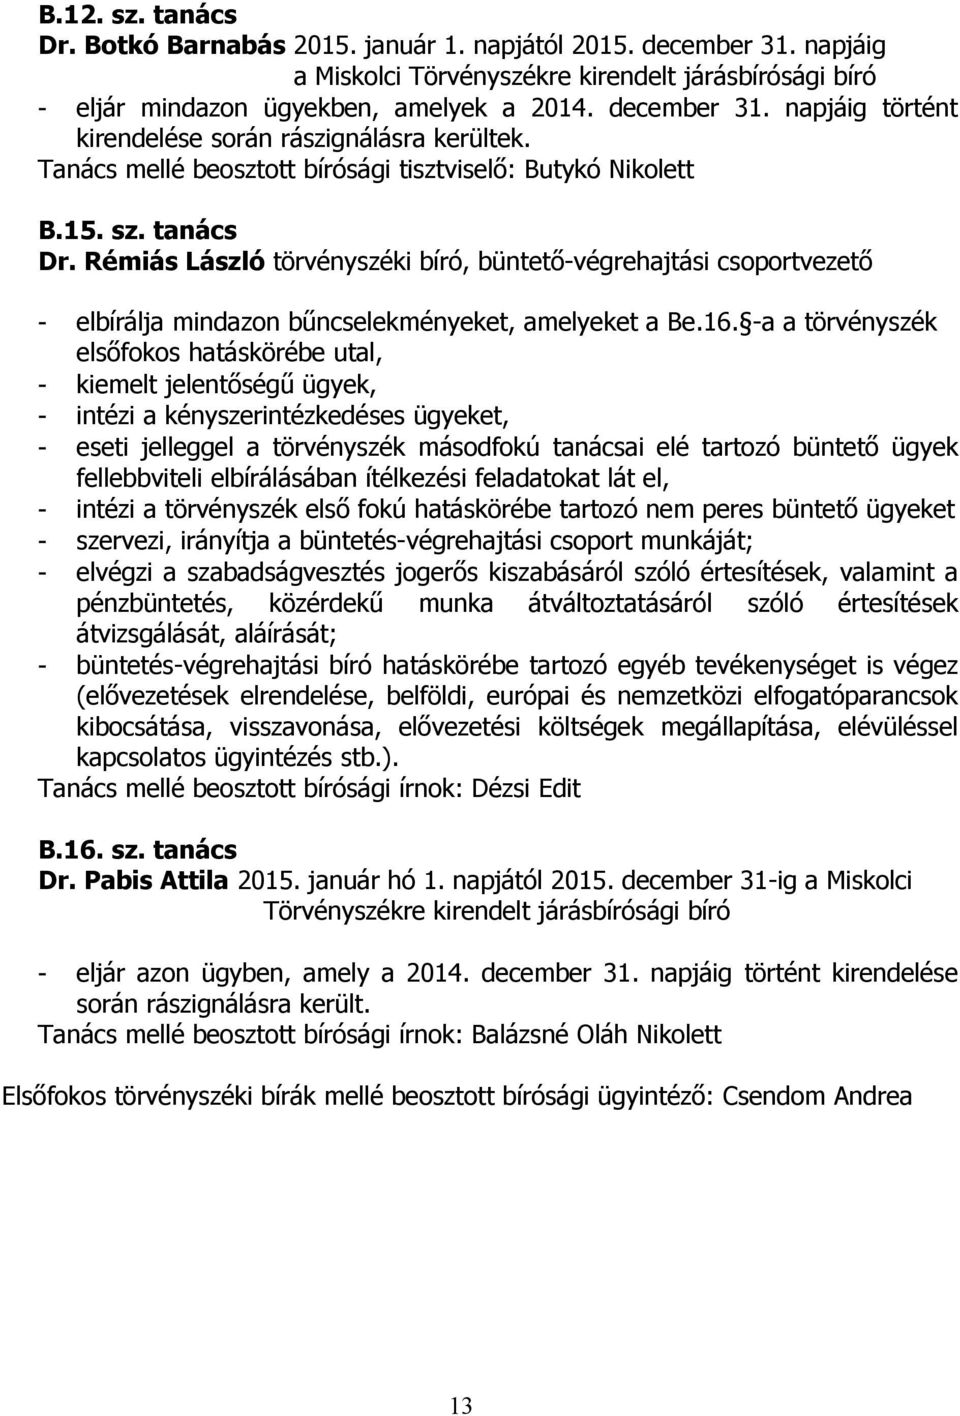 Rémiás László törvényszéki bíró, büntető-végrehajtási csoportvezető - elbírálja mindazon bűncselekményeket, amelyeket a Be.16.